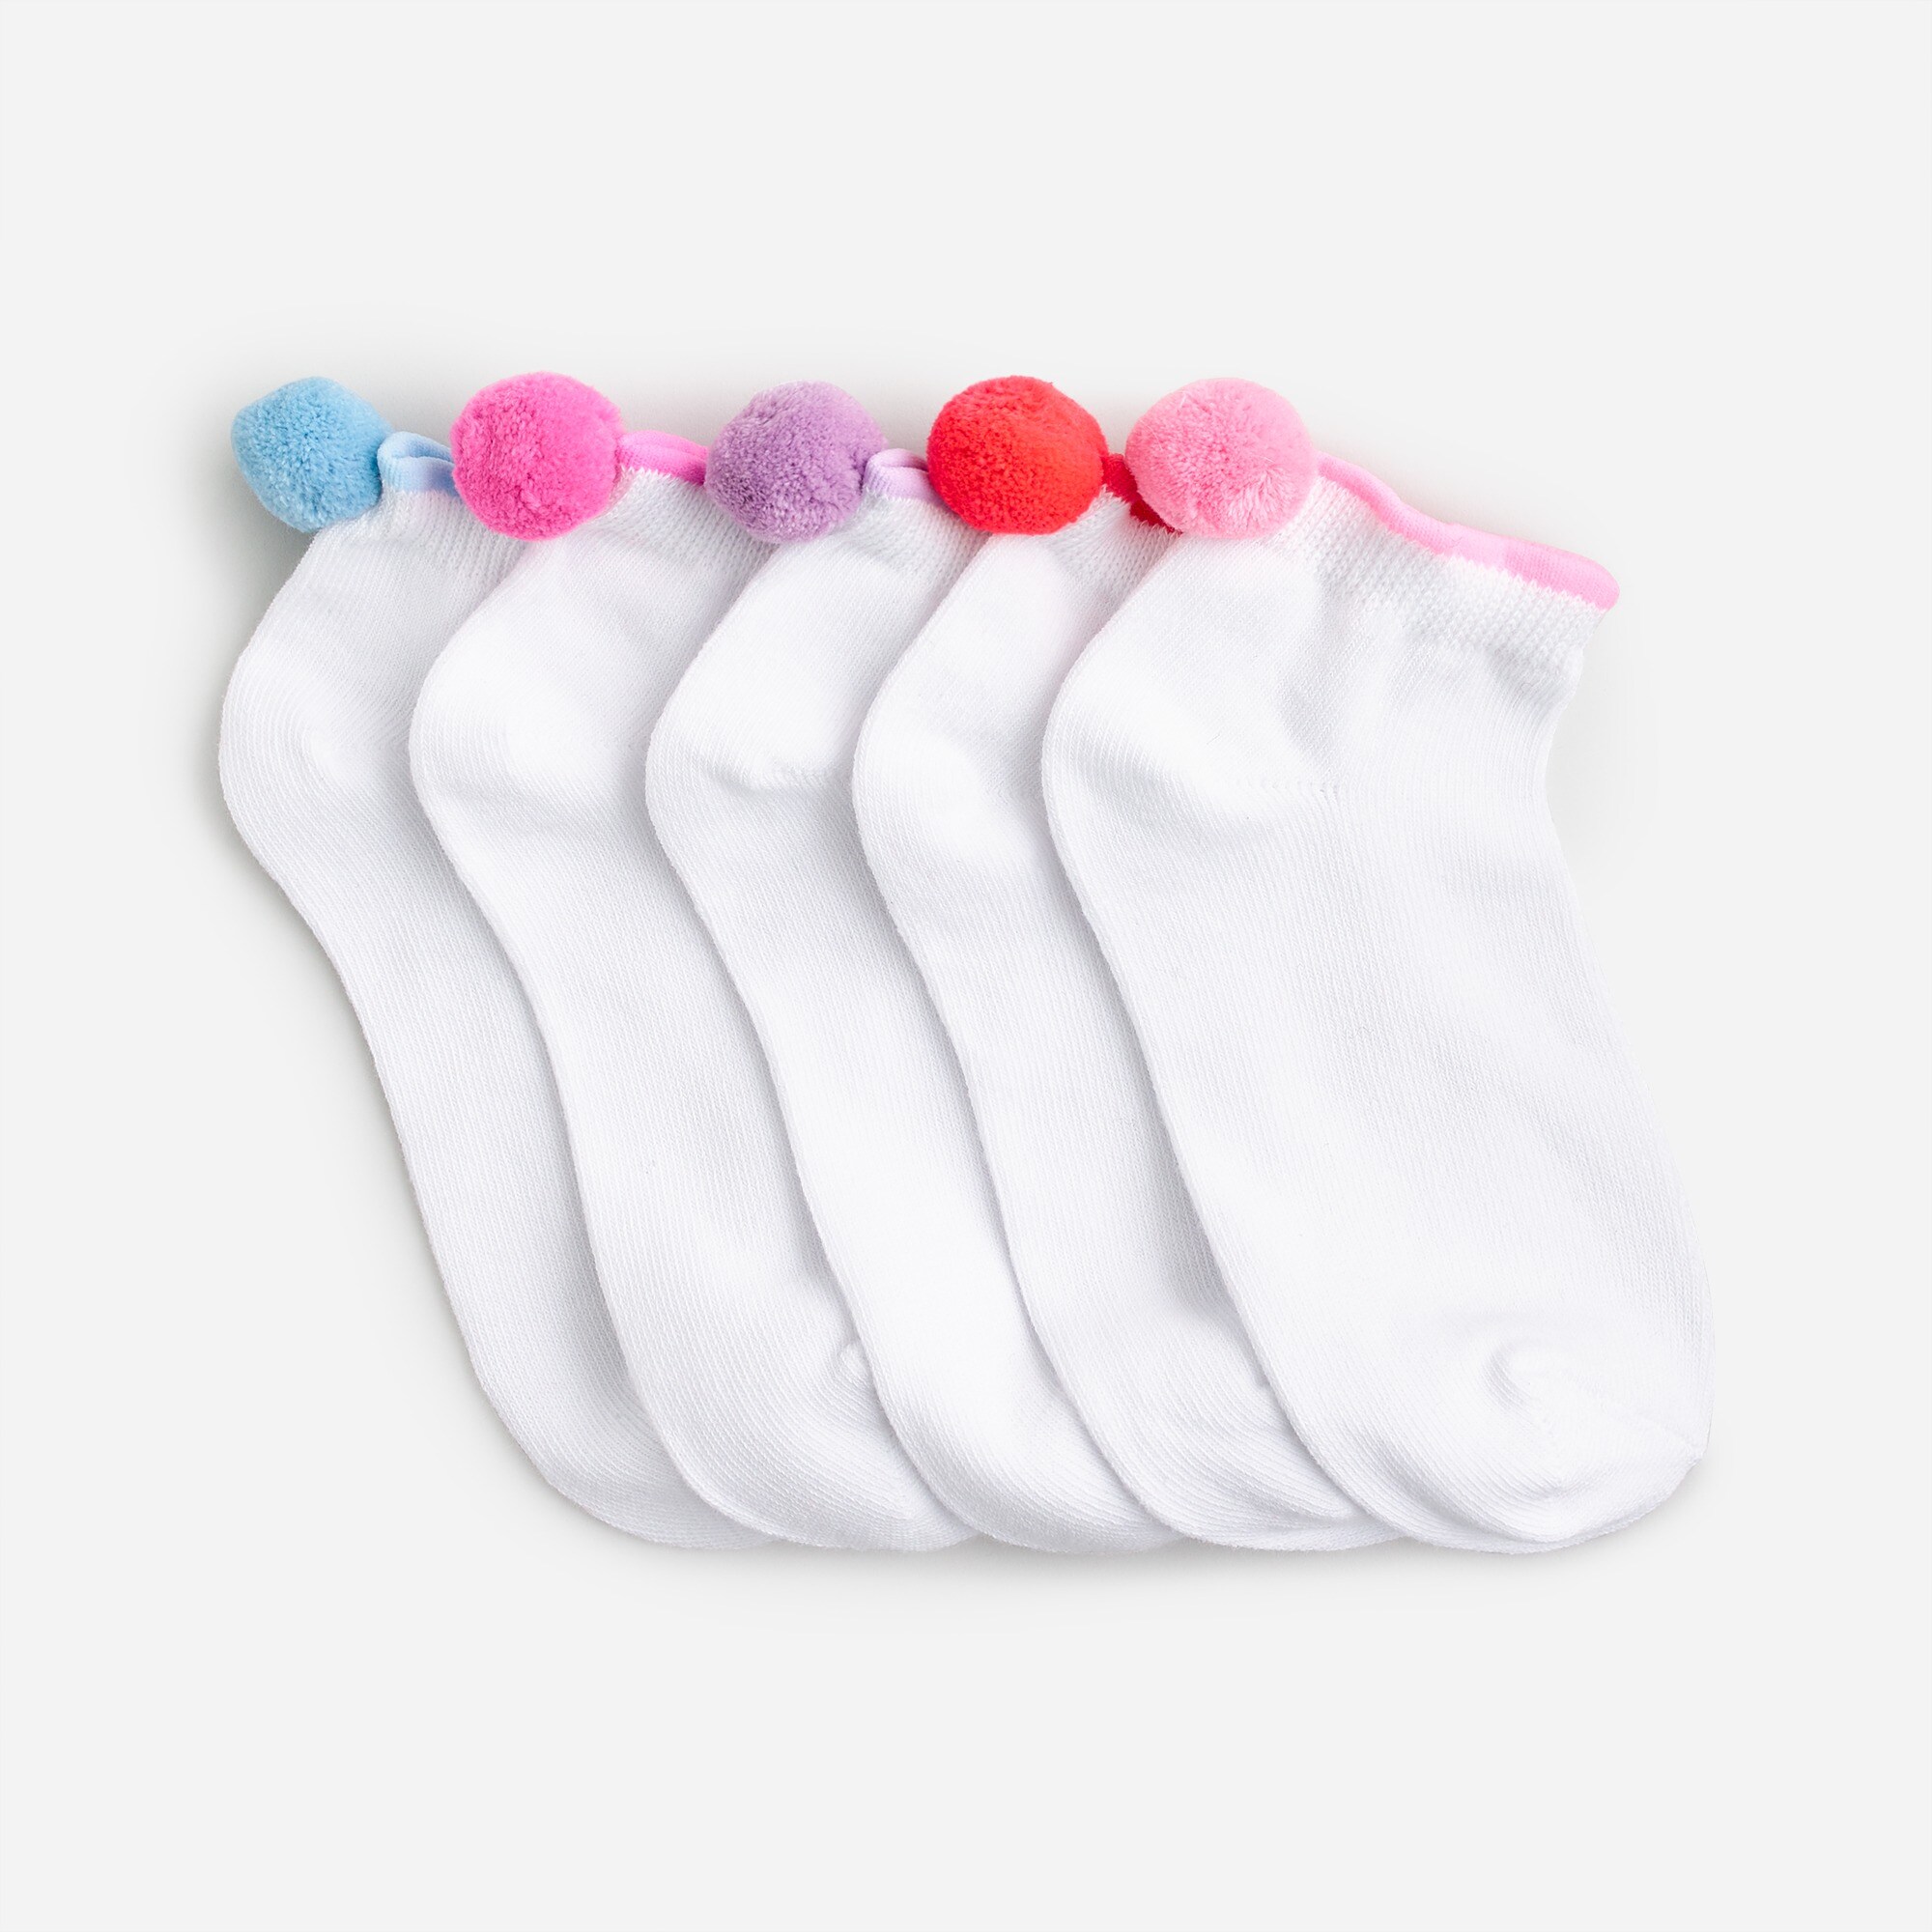 J.Crew: Girls' Pom-pom Ankle Socks Five-pack For Girls